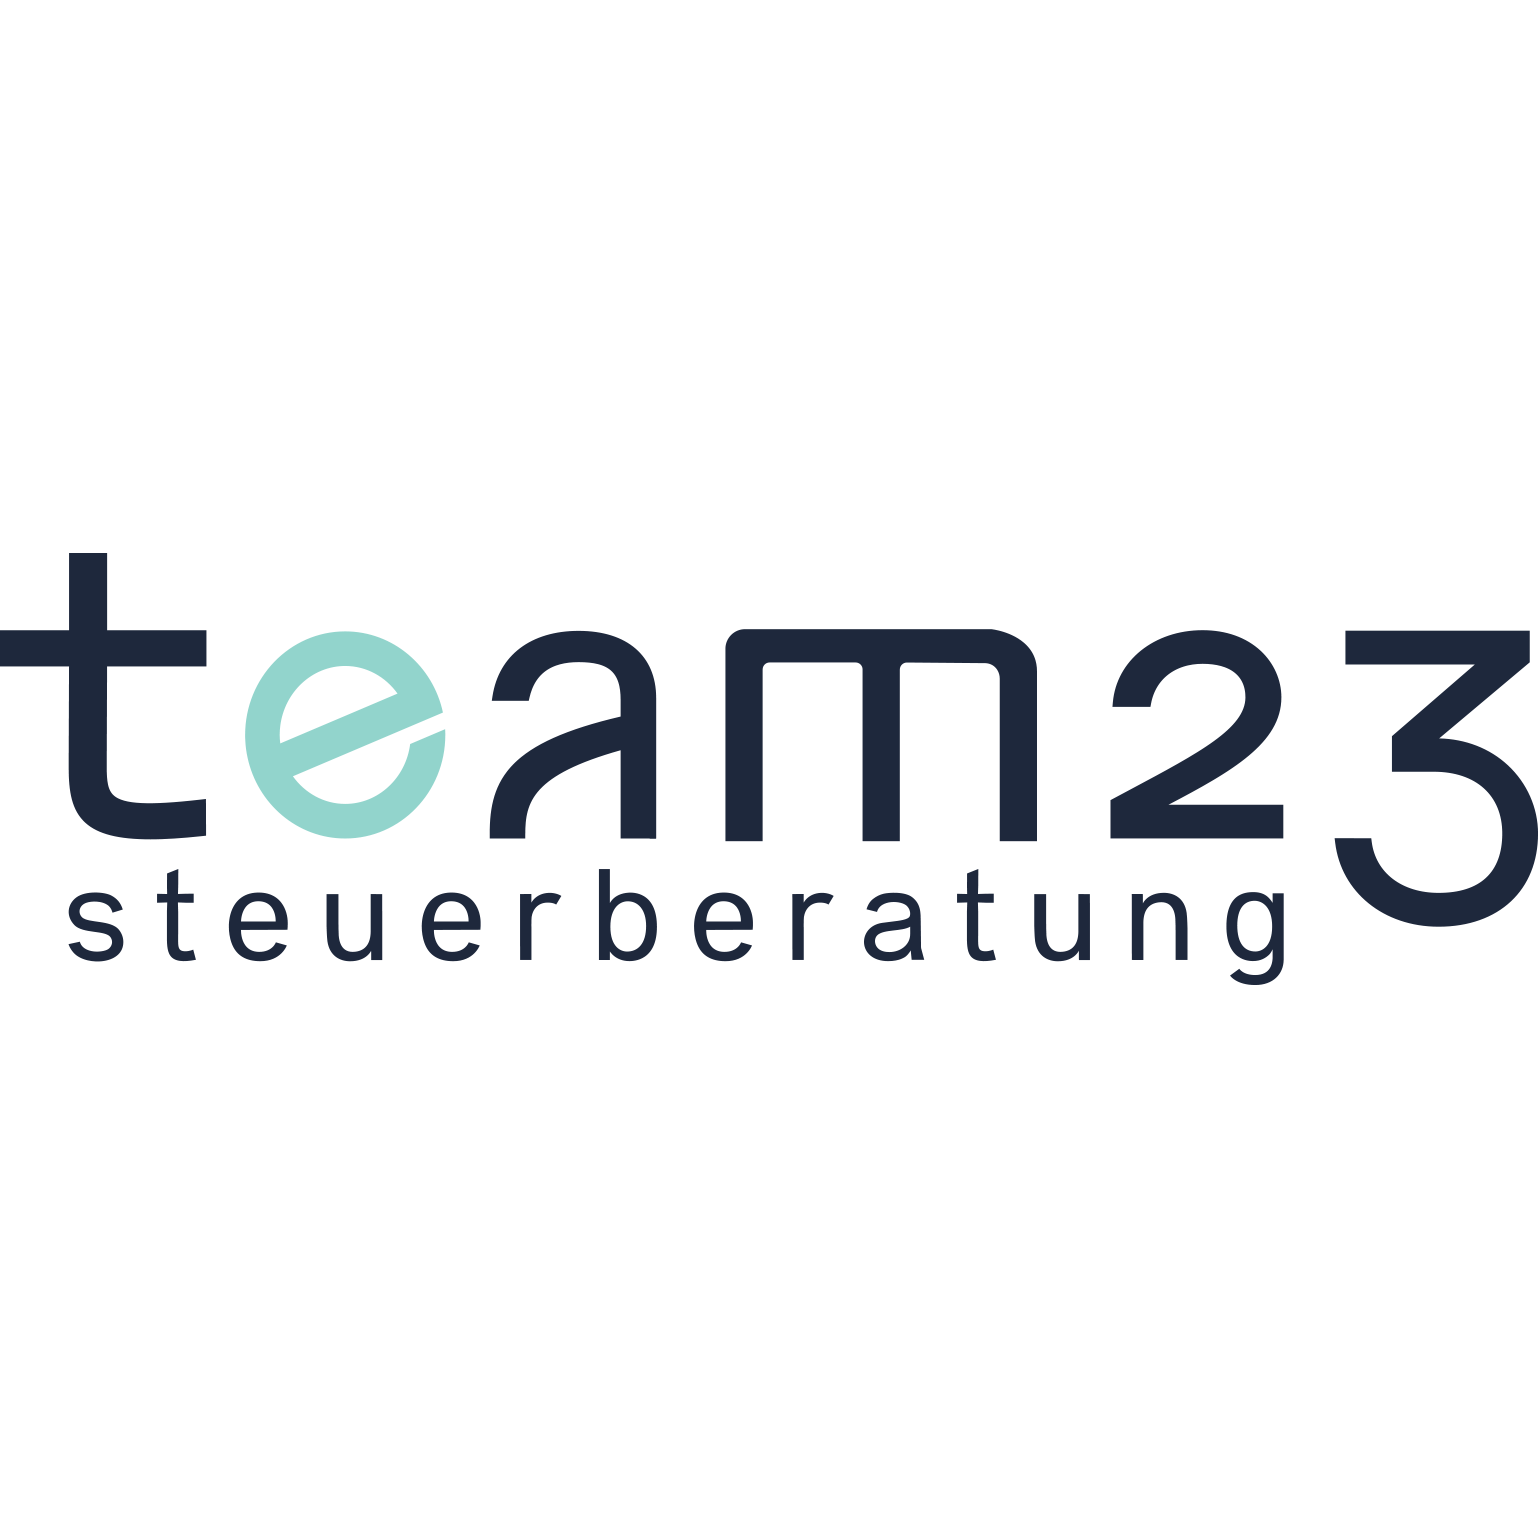 Team23 Steuerberatung GmbH in Wien 1200